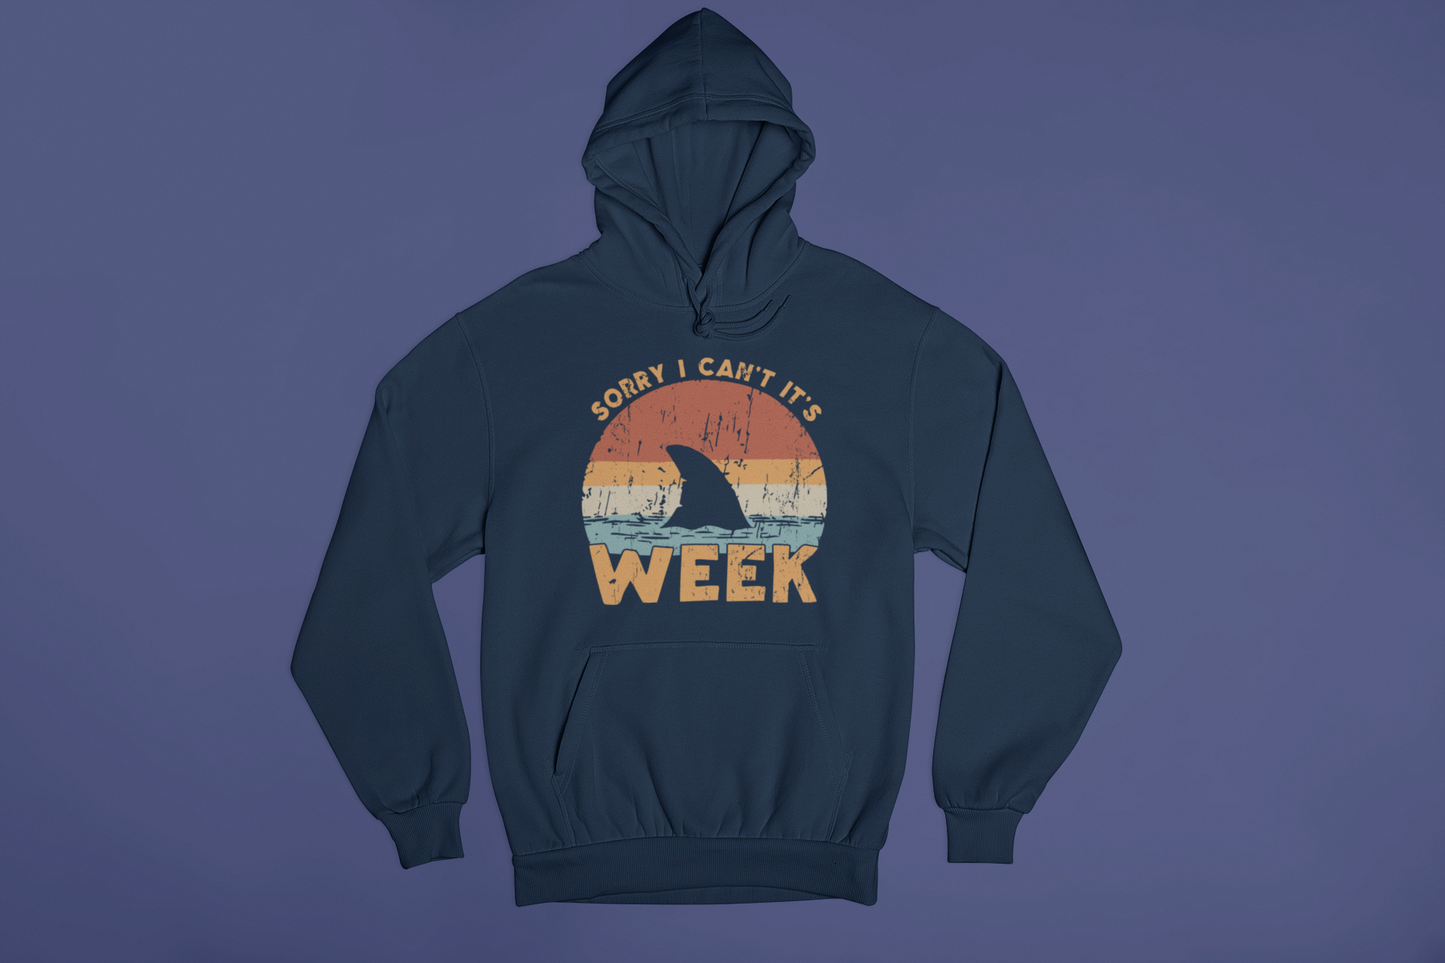 Shark Week Hoodie